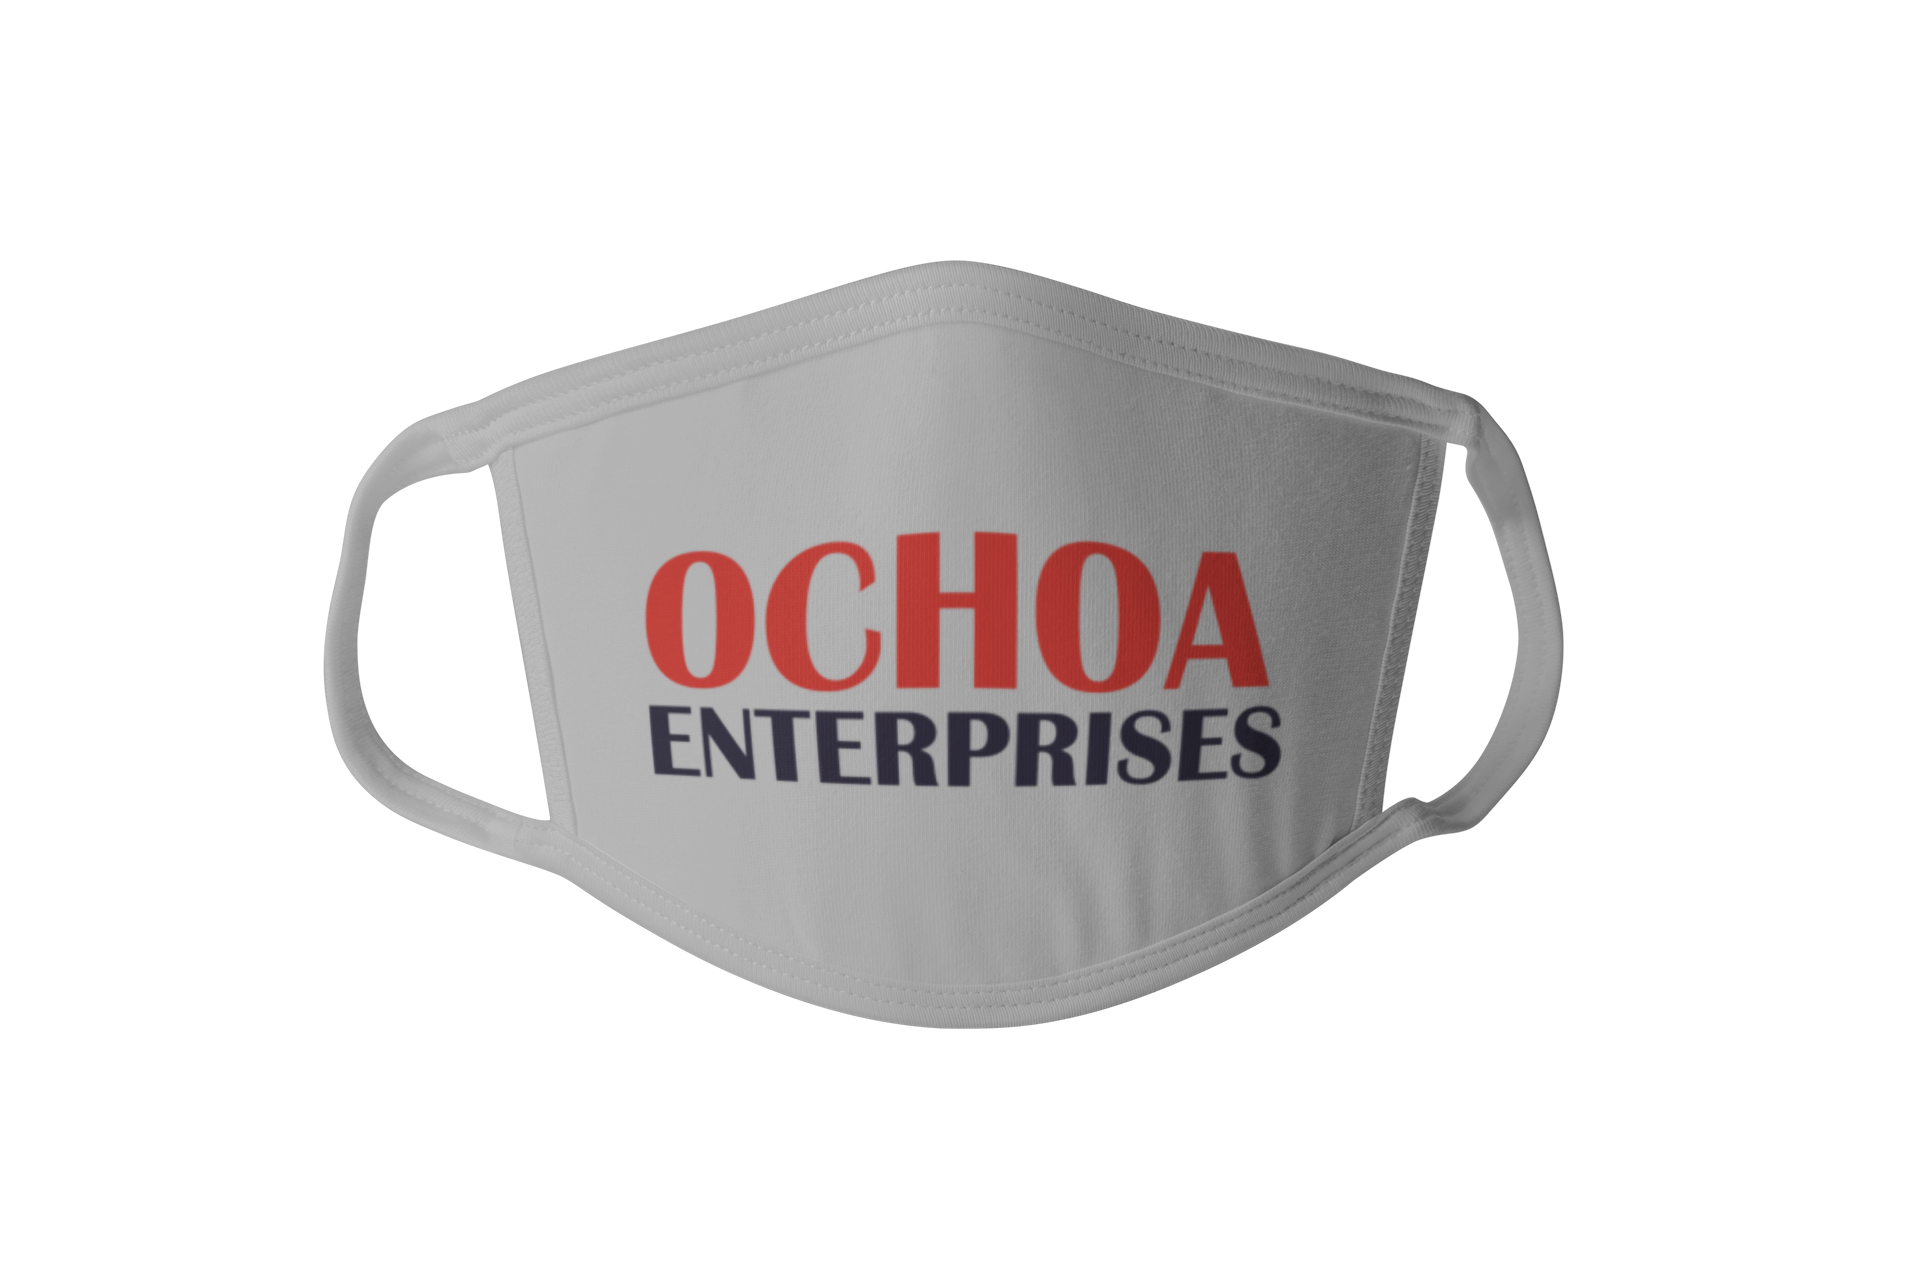 Ochoa Enterprises - Face Masks